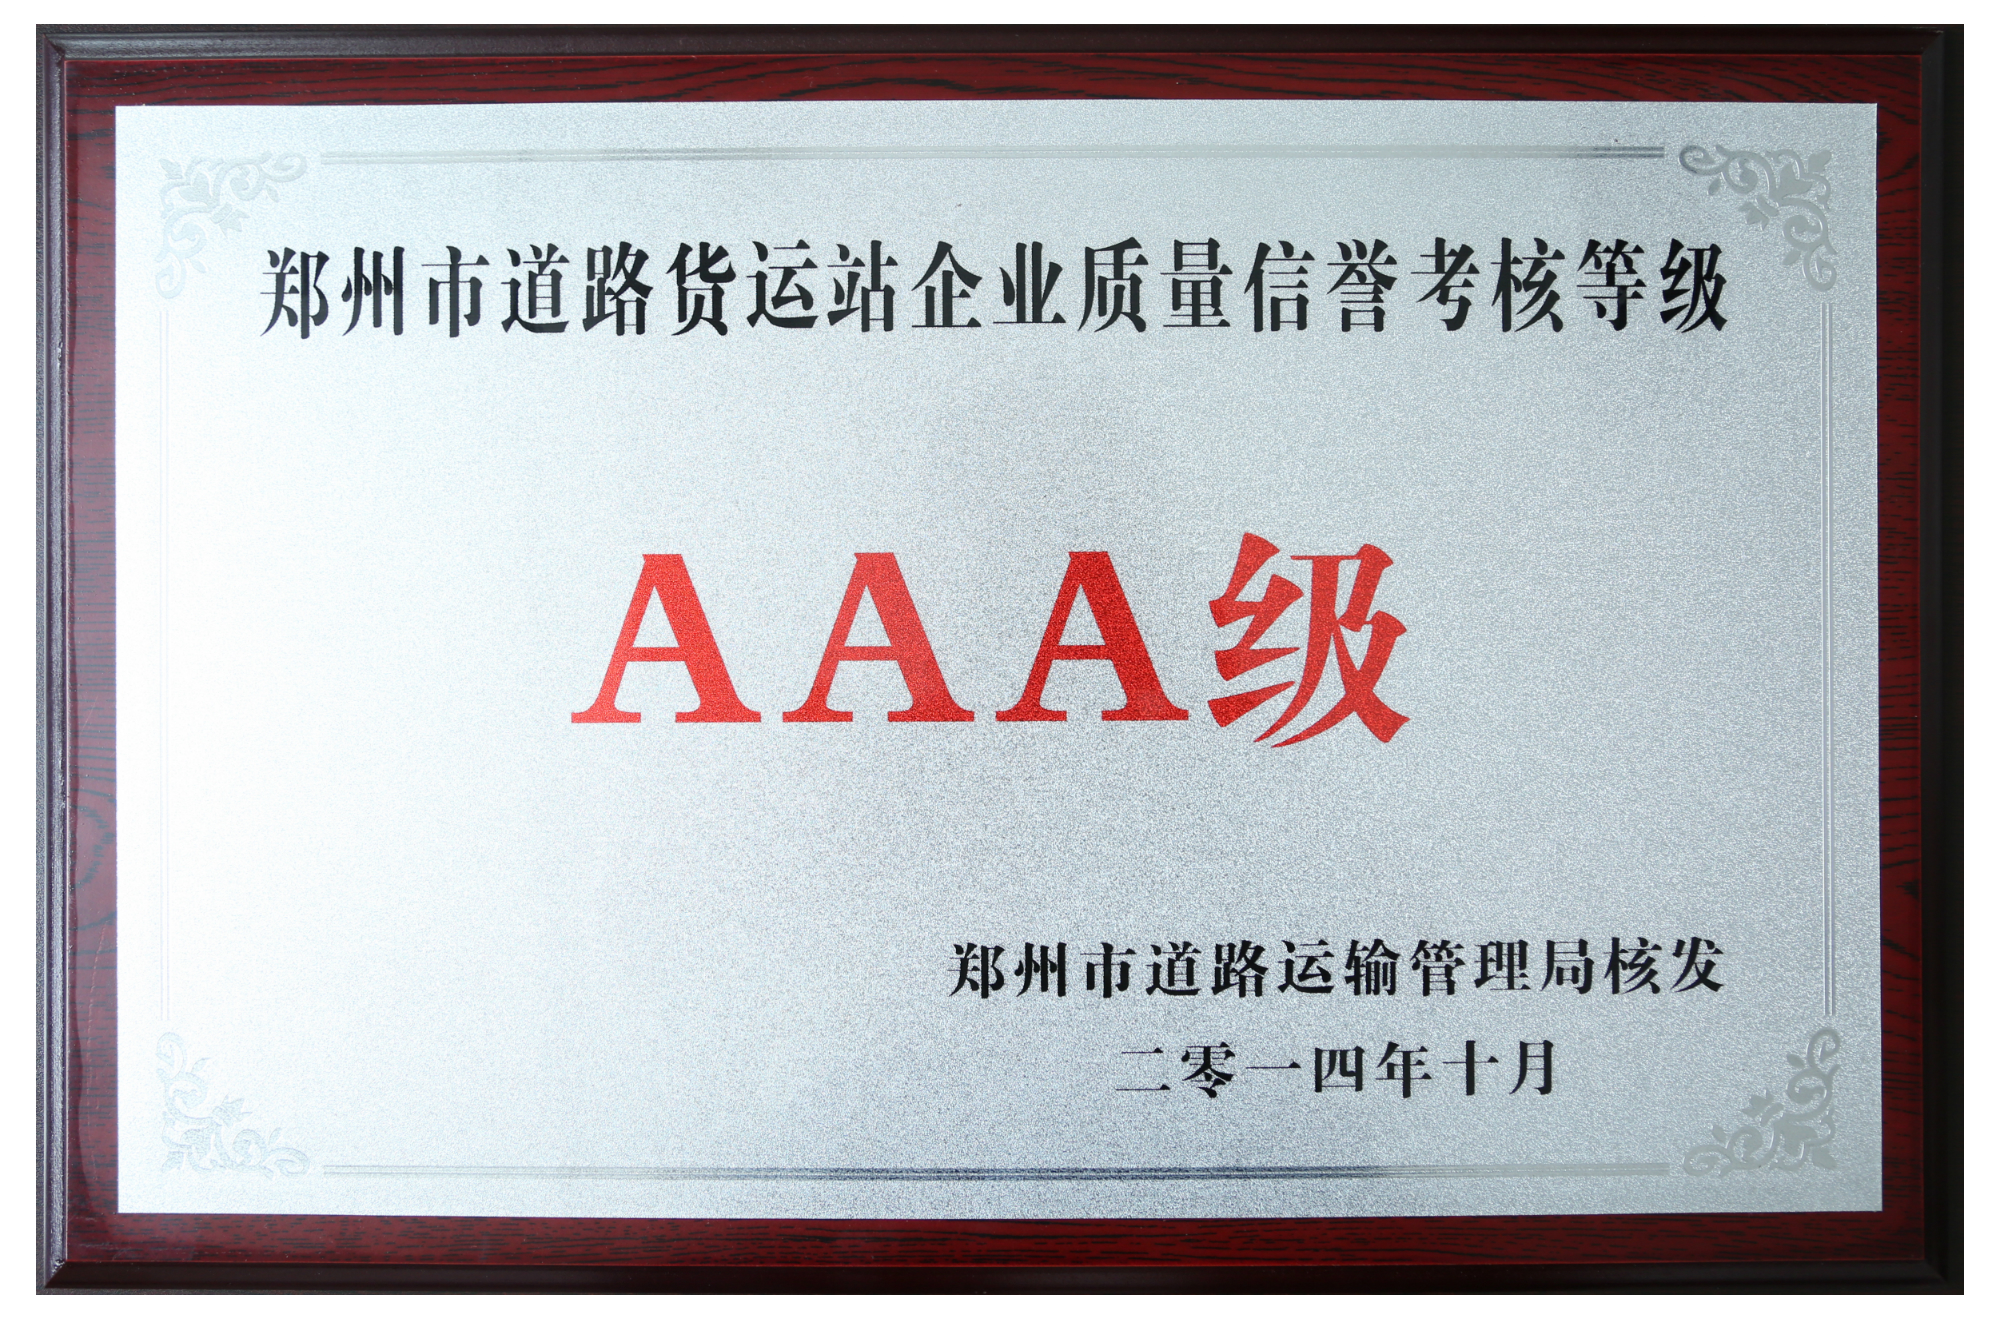 郑州市道路货运站企业质量信誉考核等级AAA级.JPG